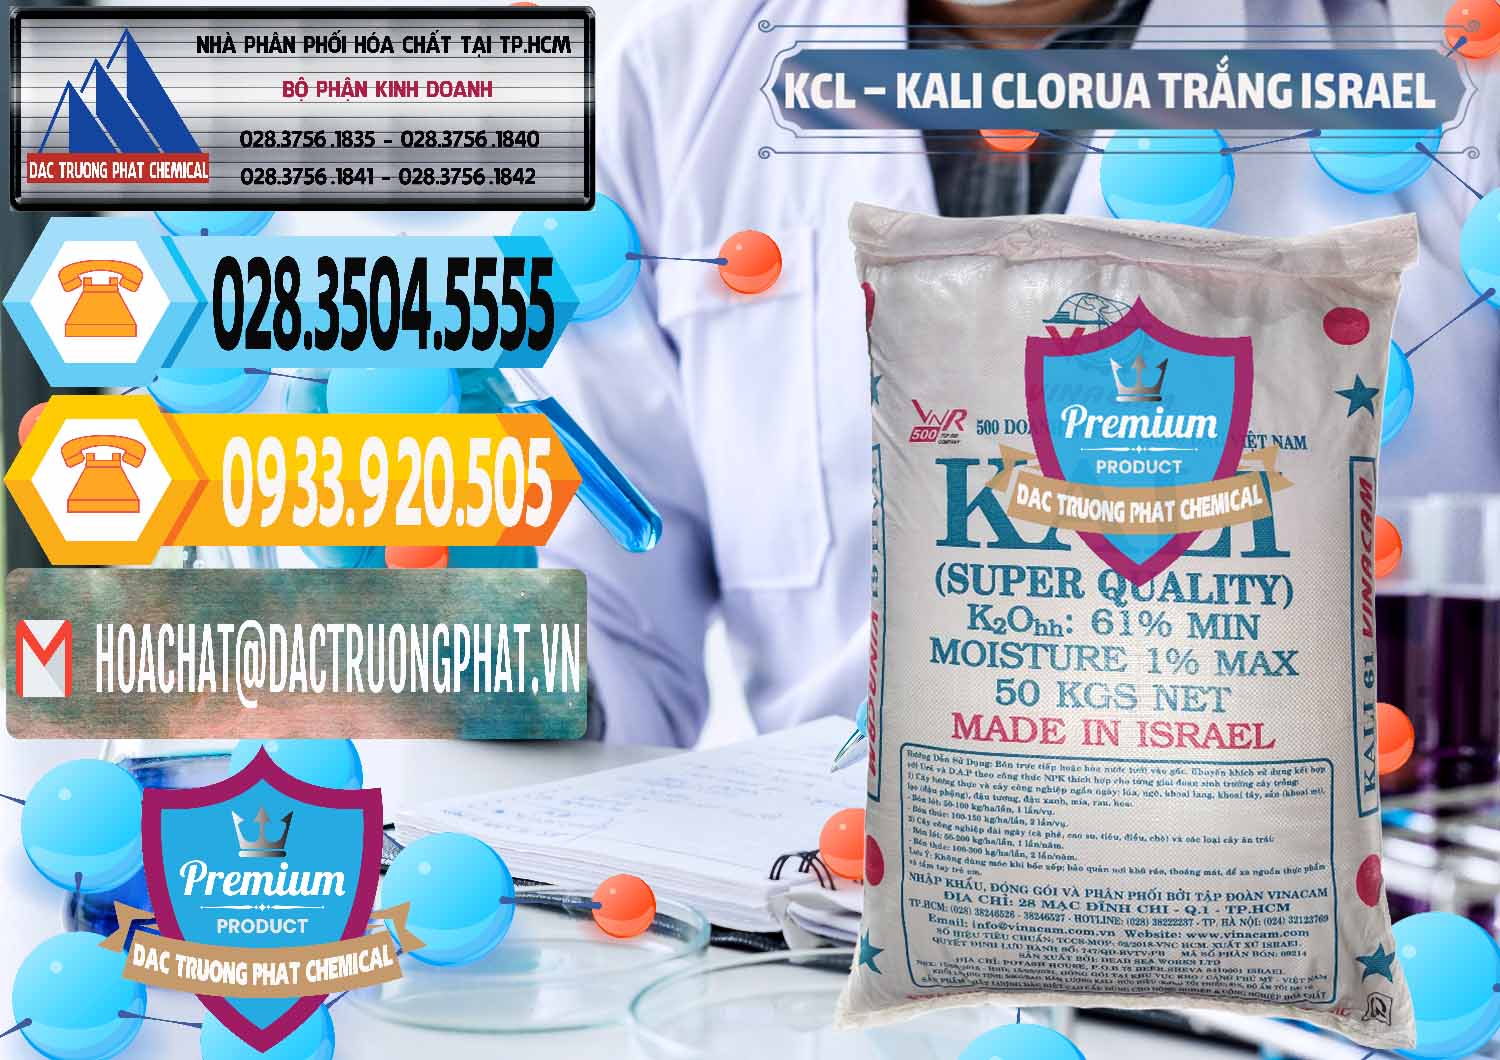 Đơn vị nhập khẩu - bán KCL – Kali Clorua Trắng Israel - 0087 - Chuyên cung cấp & kinh doanh hóa chất tại TP.HCM - hoachattayrua.net